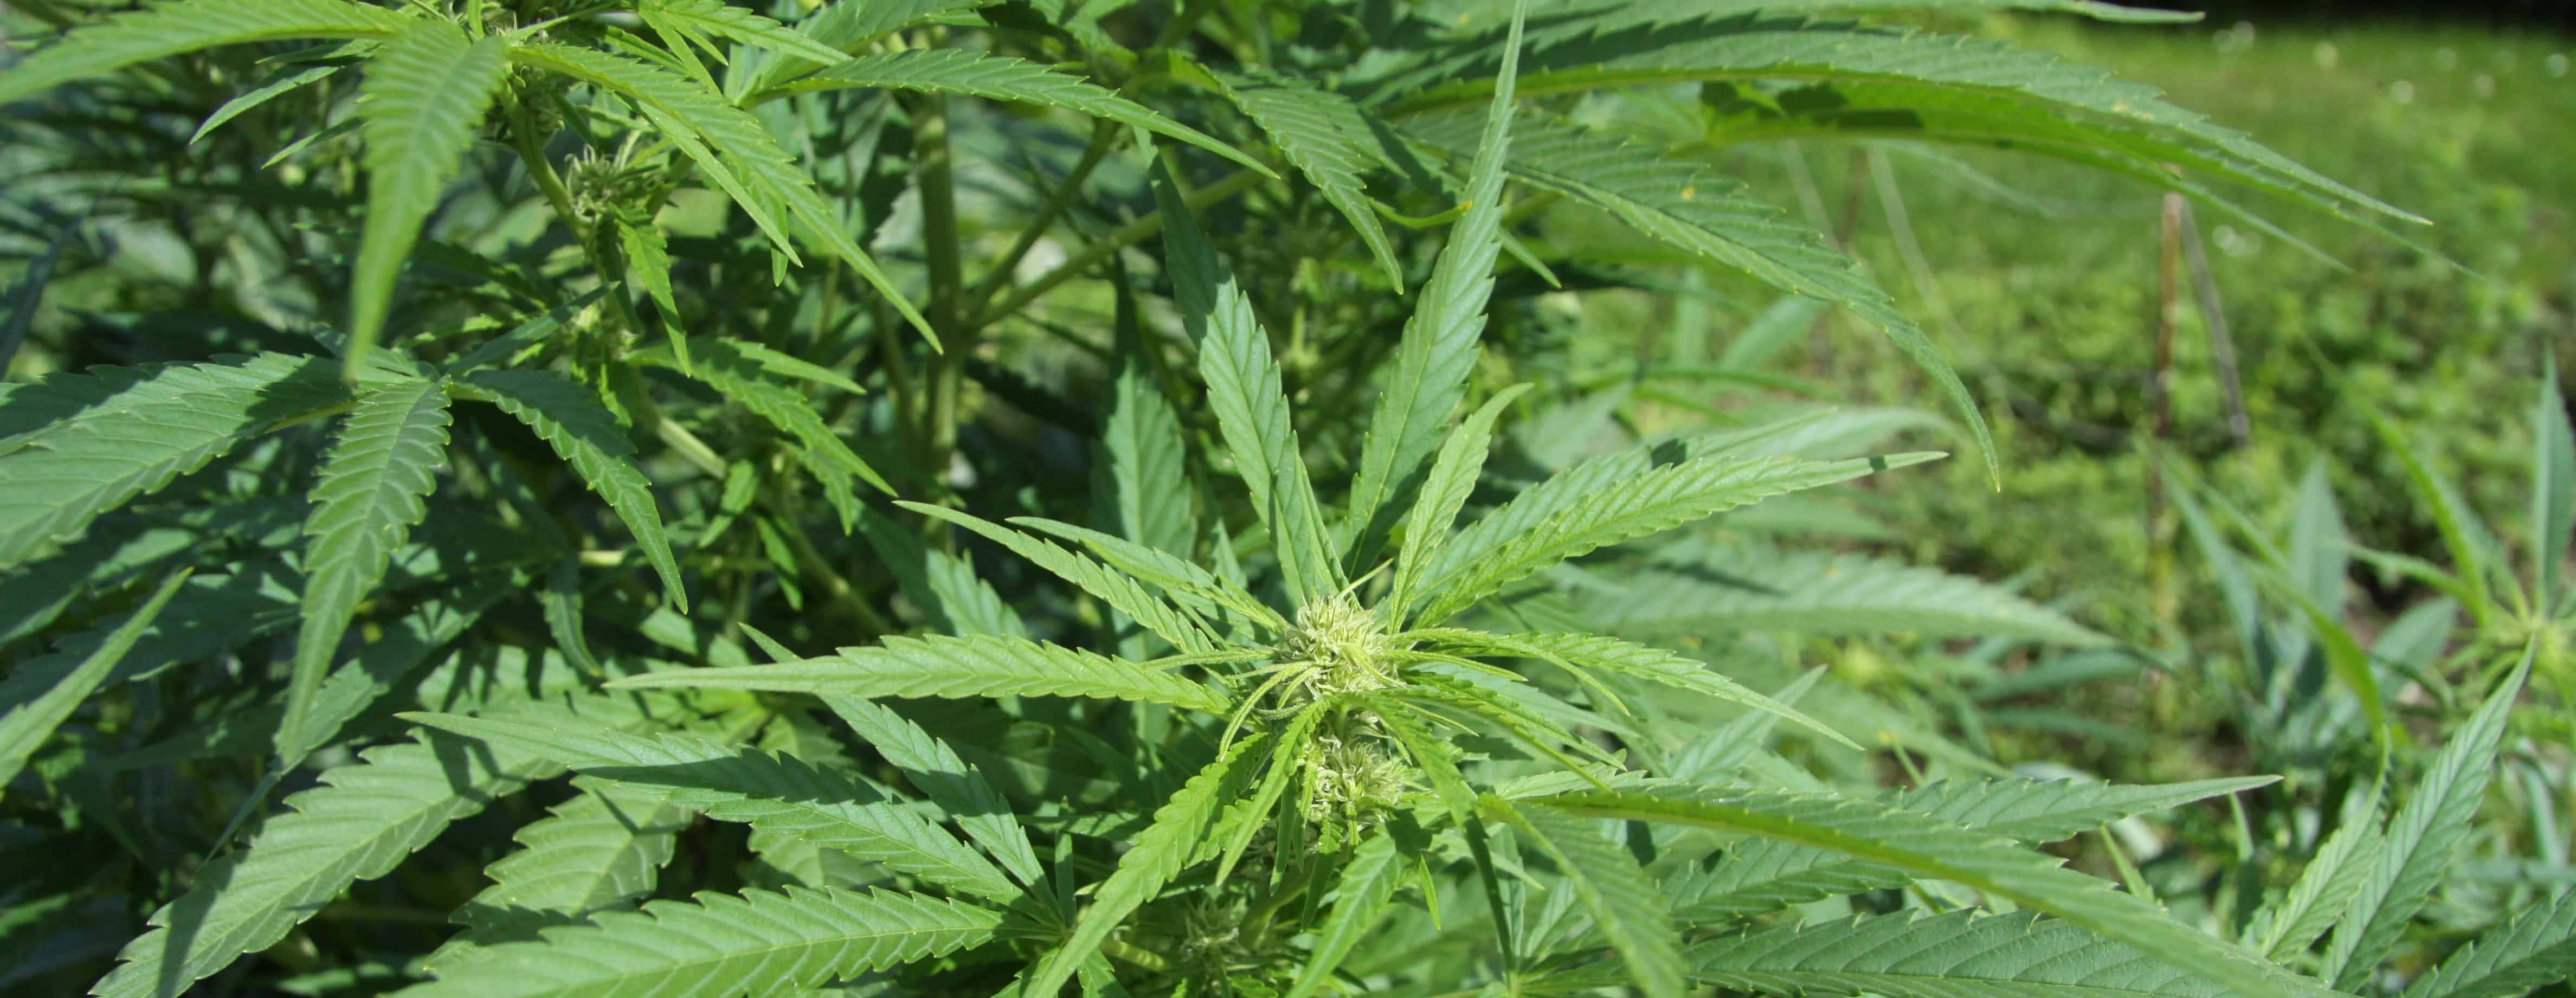 hemp-cannabis-jpg-16